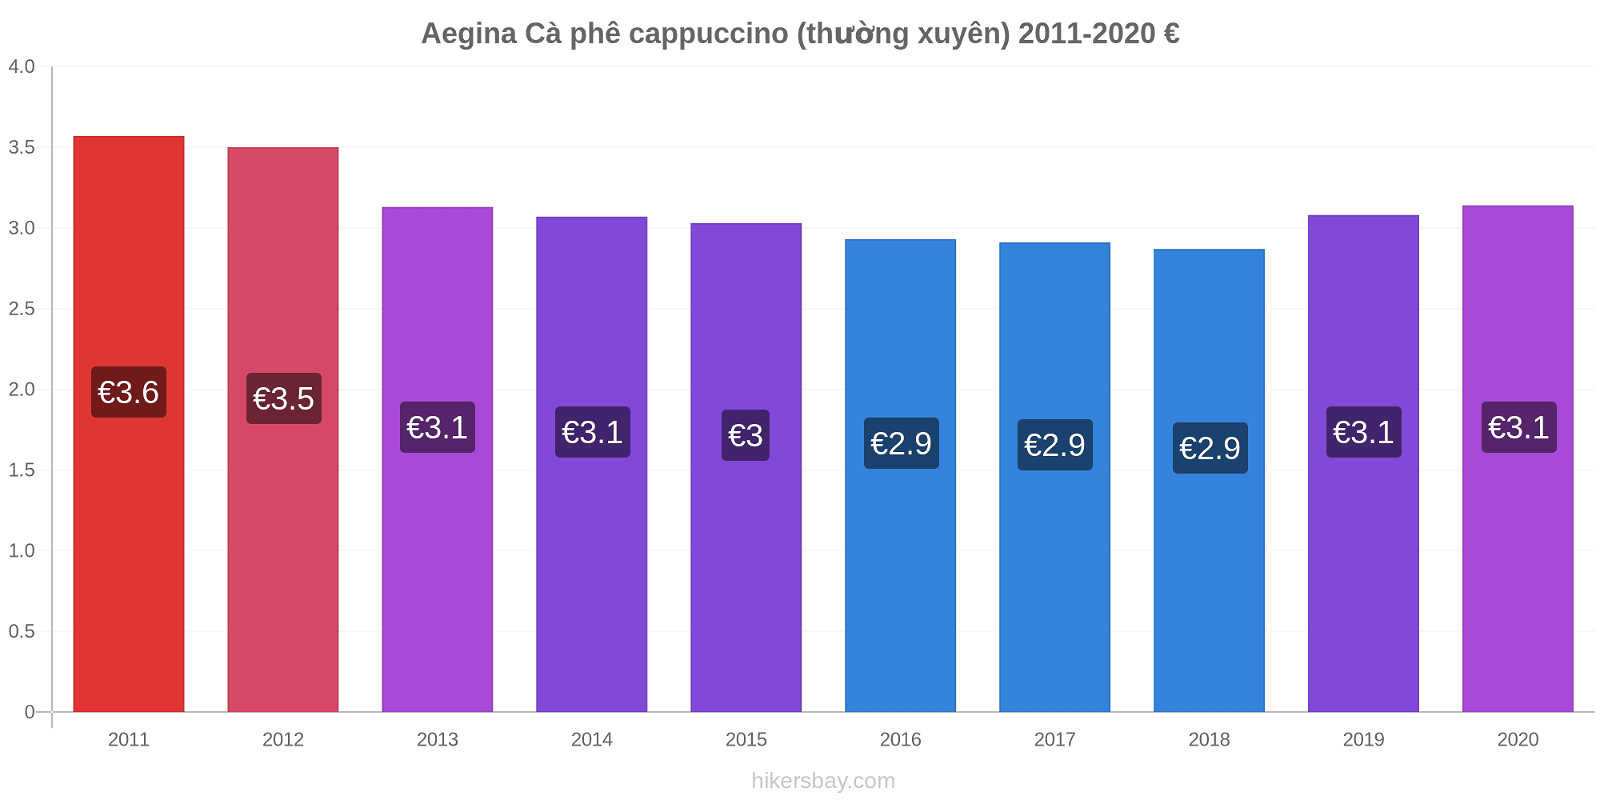 Aegina thay đổi giá Cà phê cappuccino (thường xuyên) hikersbay.com